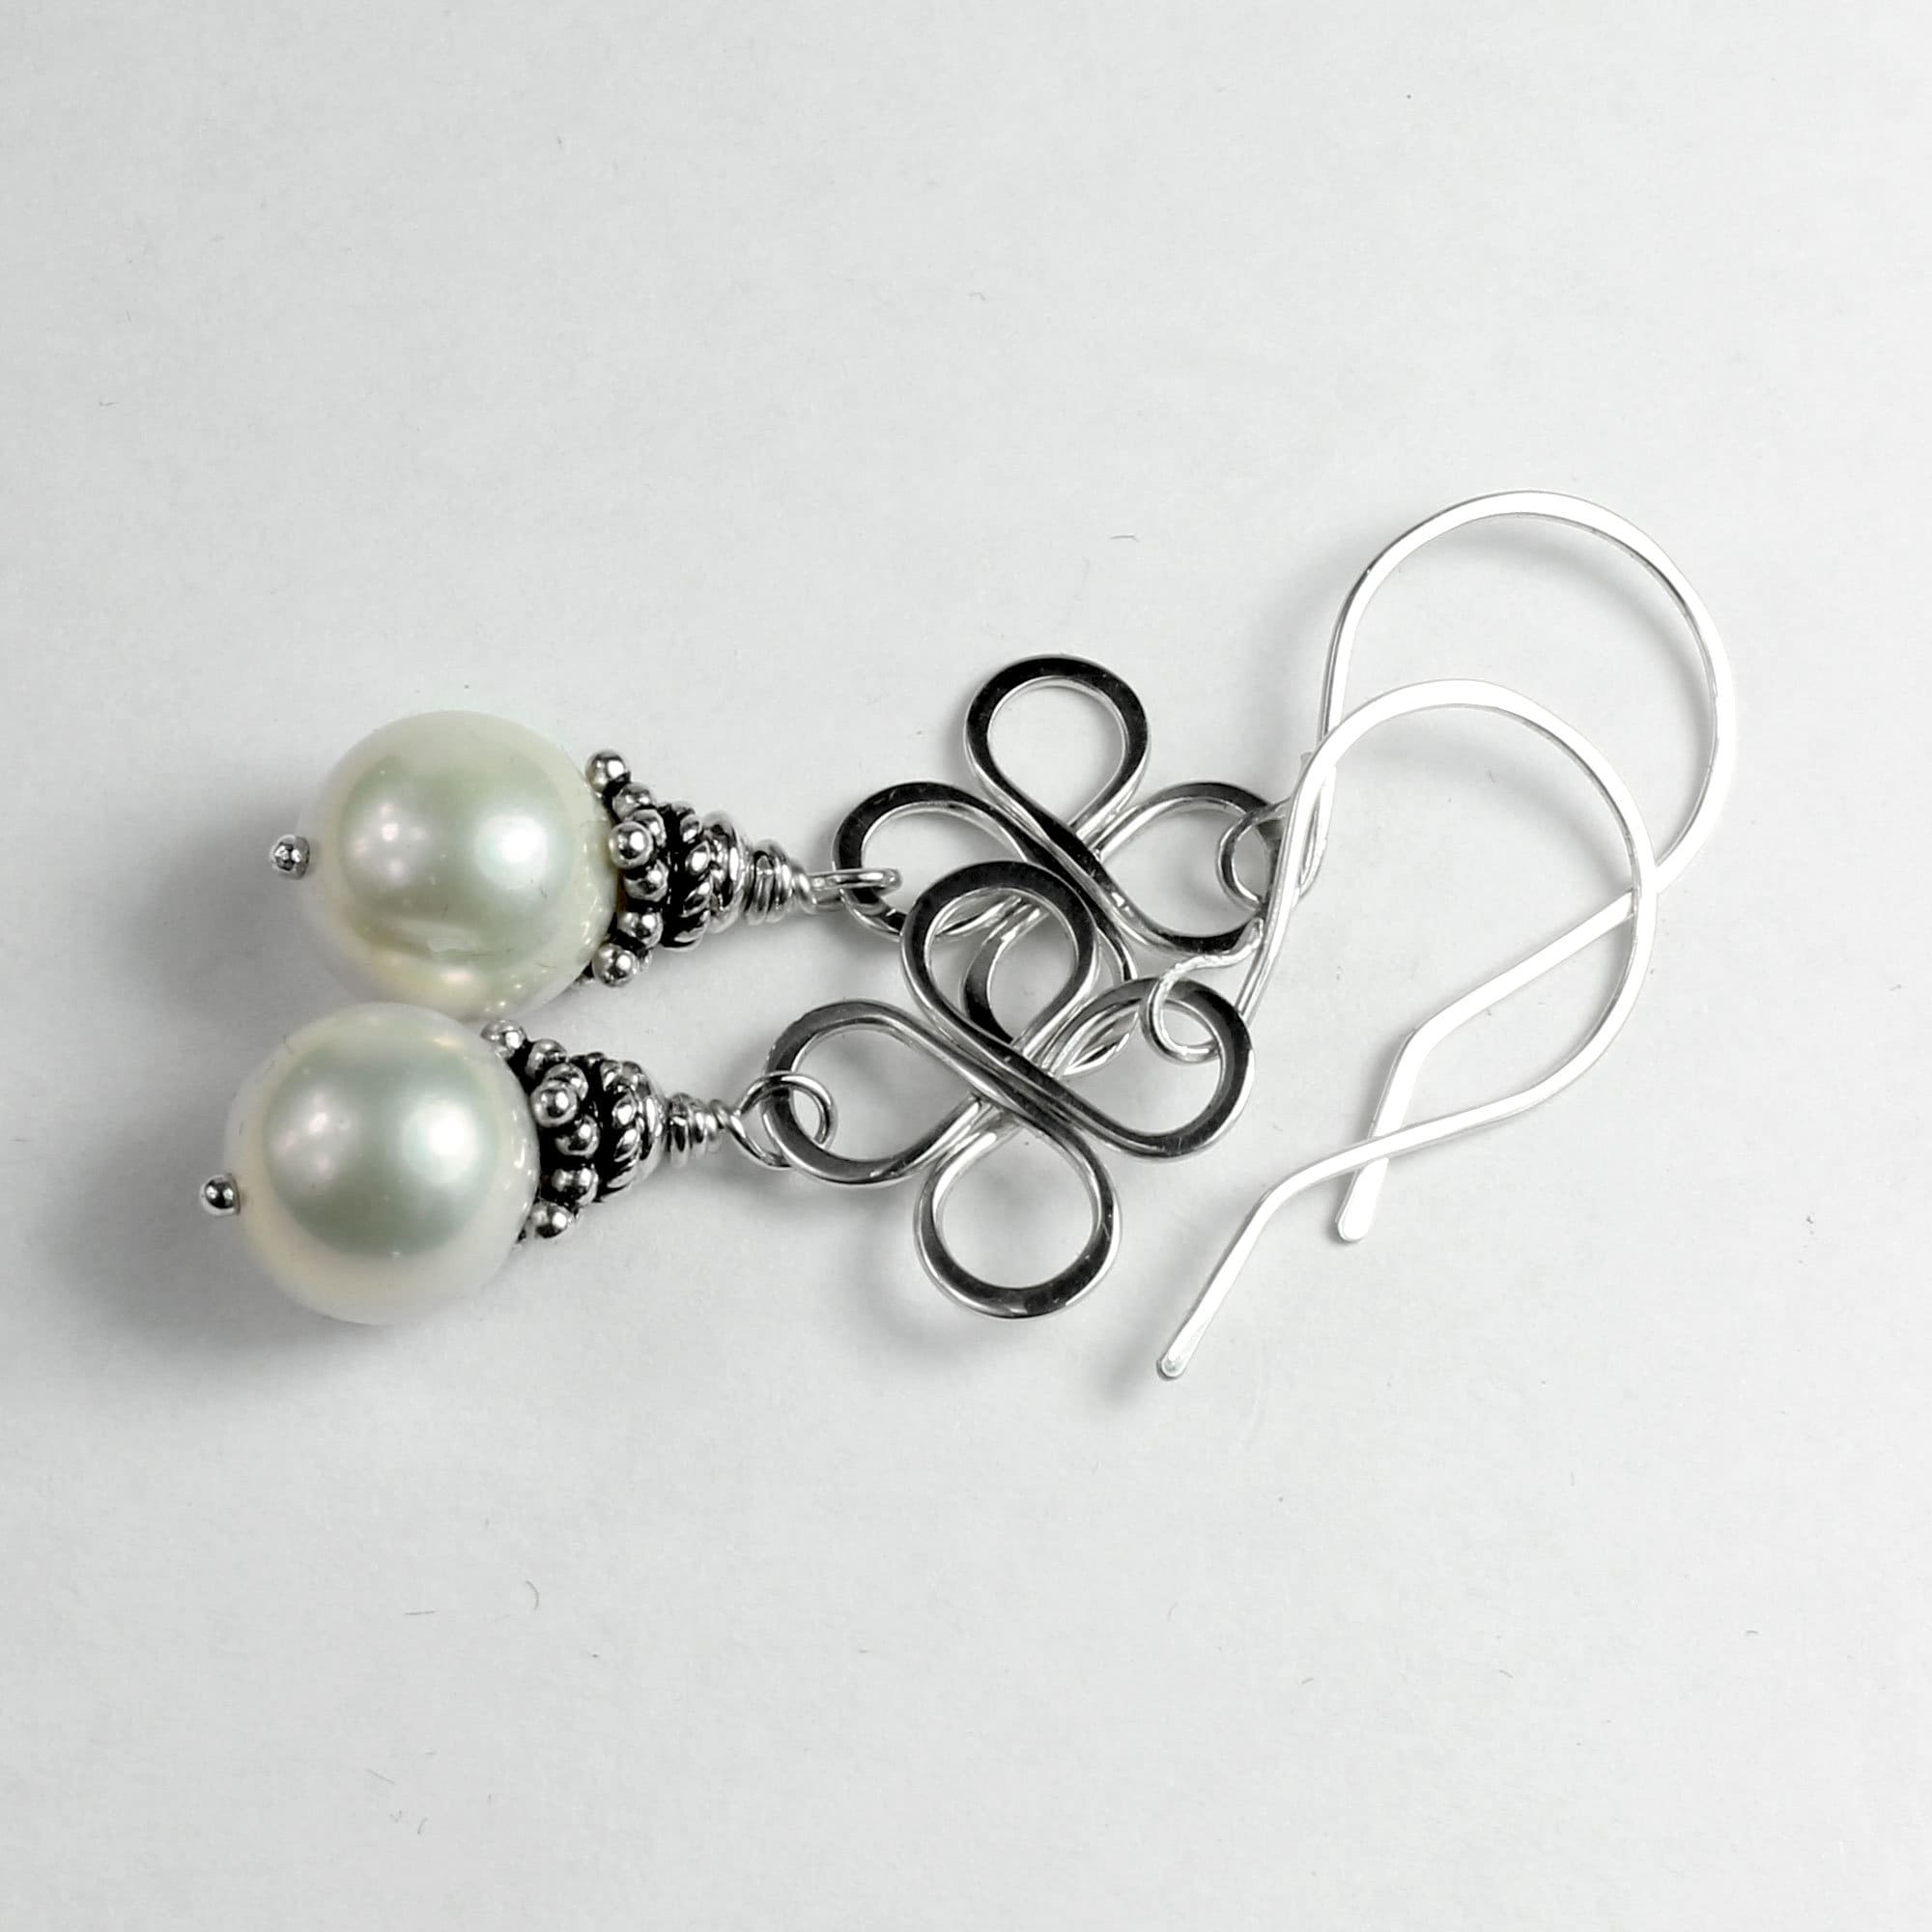 Freshwater Pearl Earrings Sterling Silver Wire Flowers